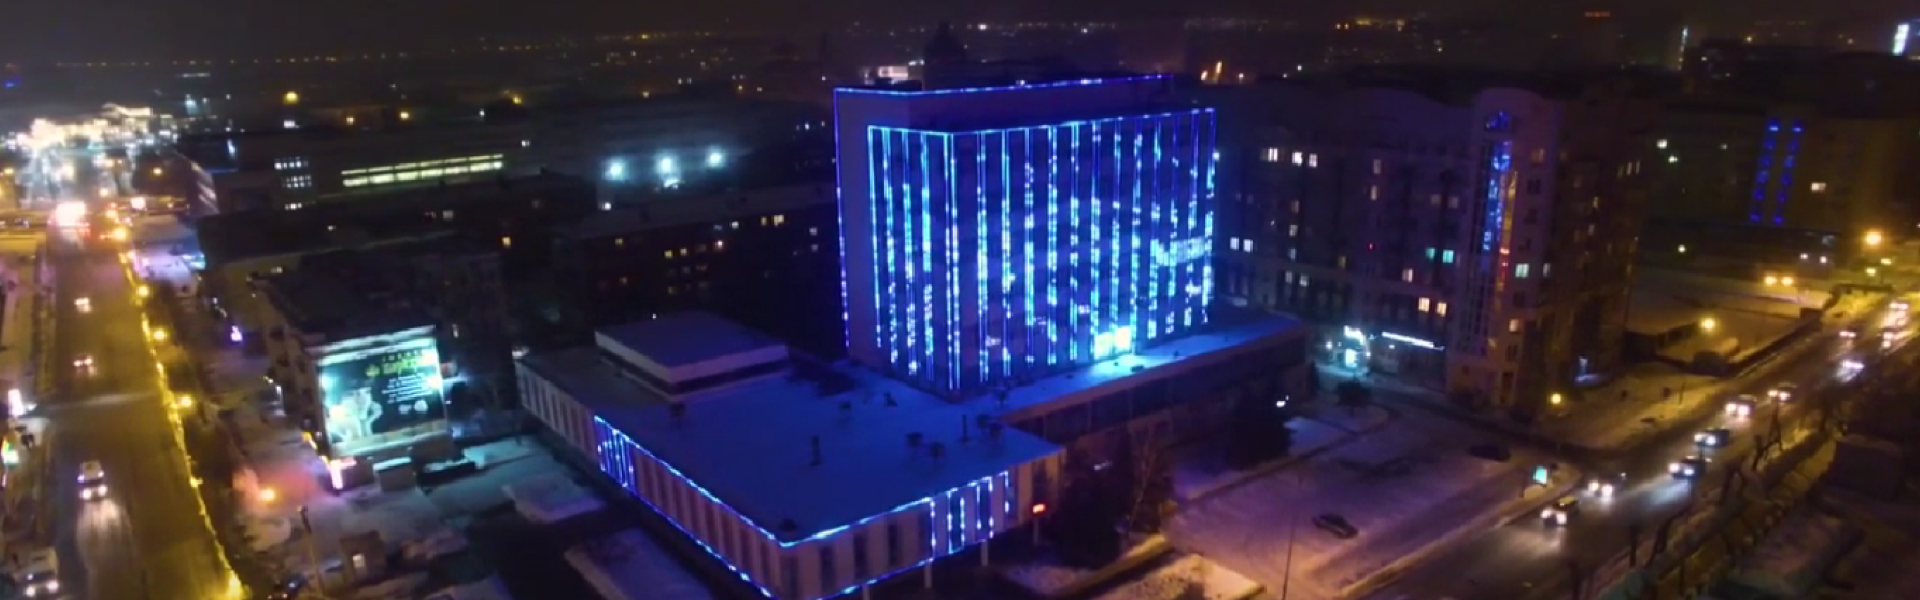 Архитектурная подсветка торгового центра «Дом быта» в Омске